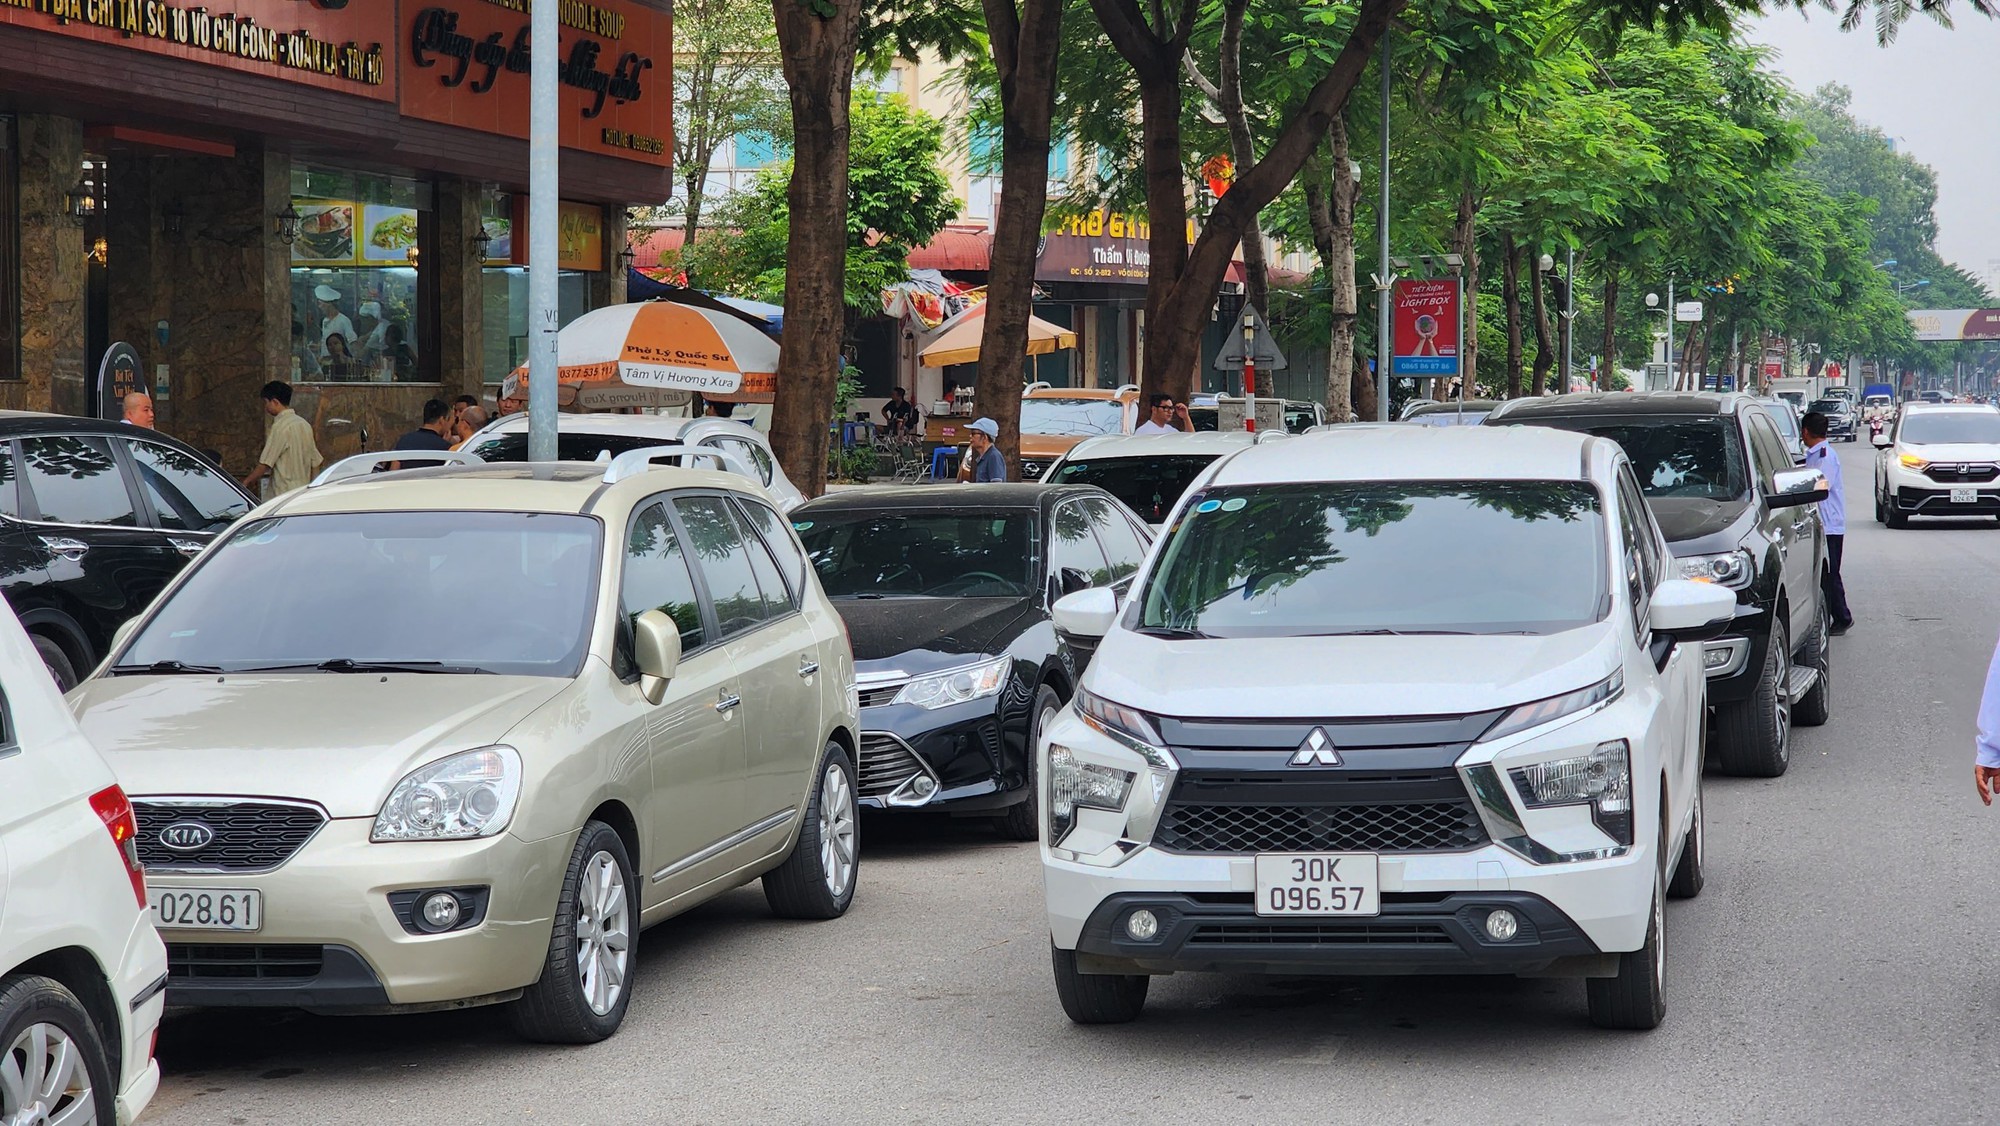   Hà Nội: Ngang nhiên biến vỉa hè, lòng đường Võ Chí Công thành nơi đỗ xe, kinh doanh  - Ảnh 9.